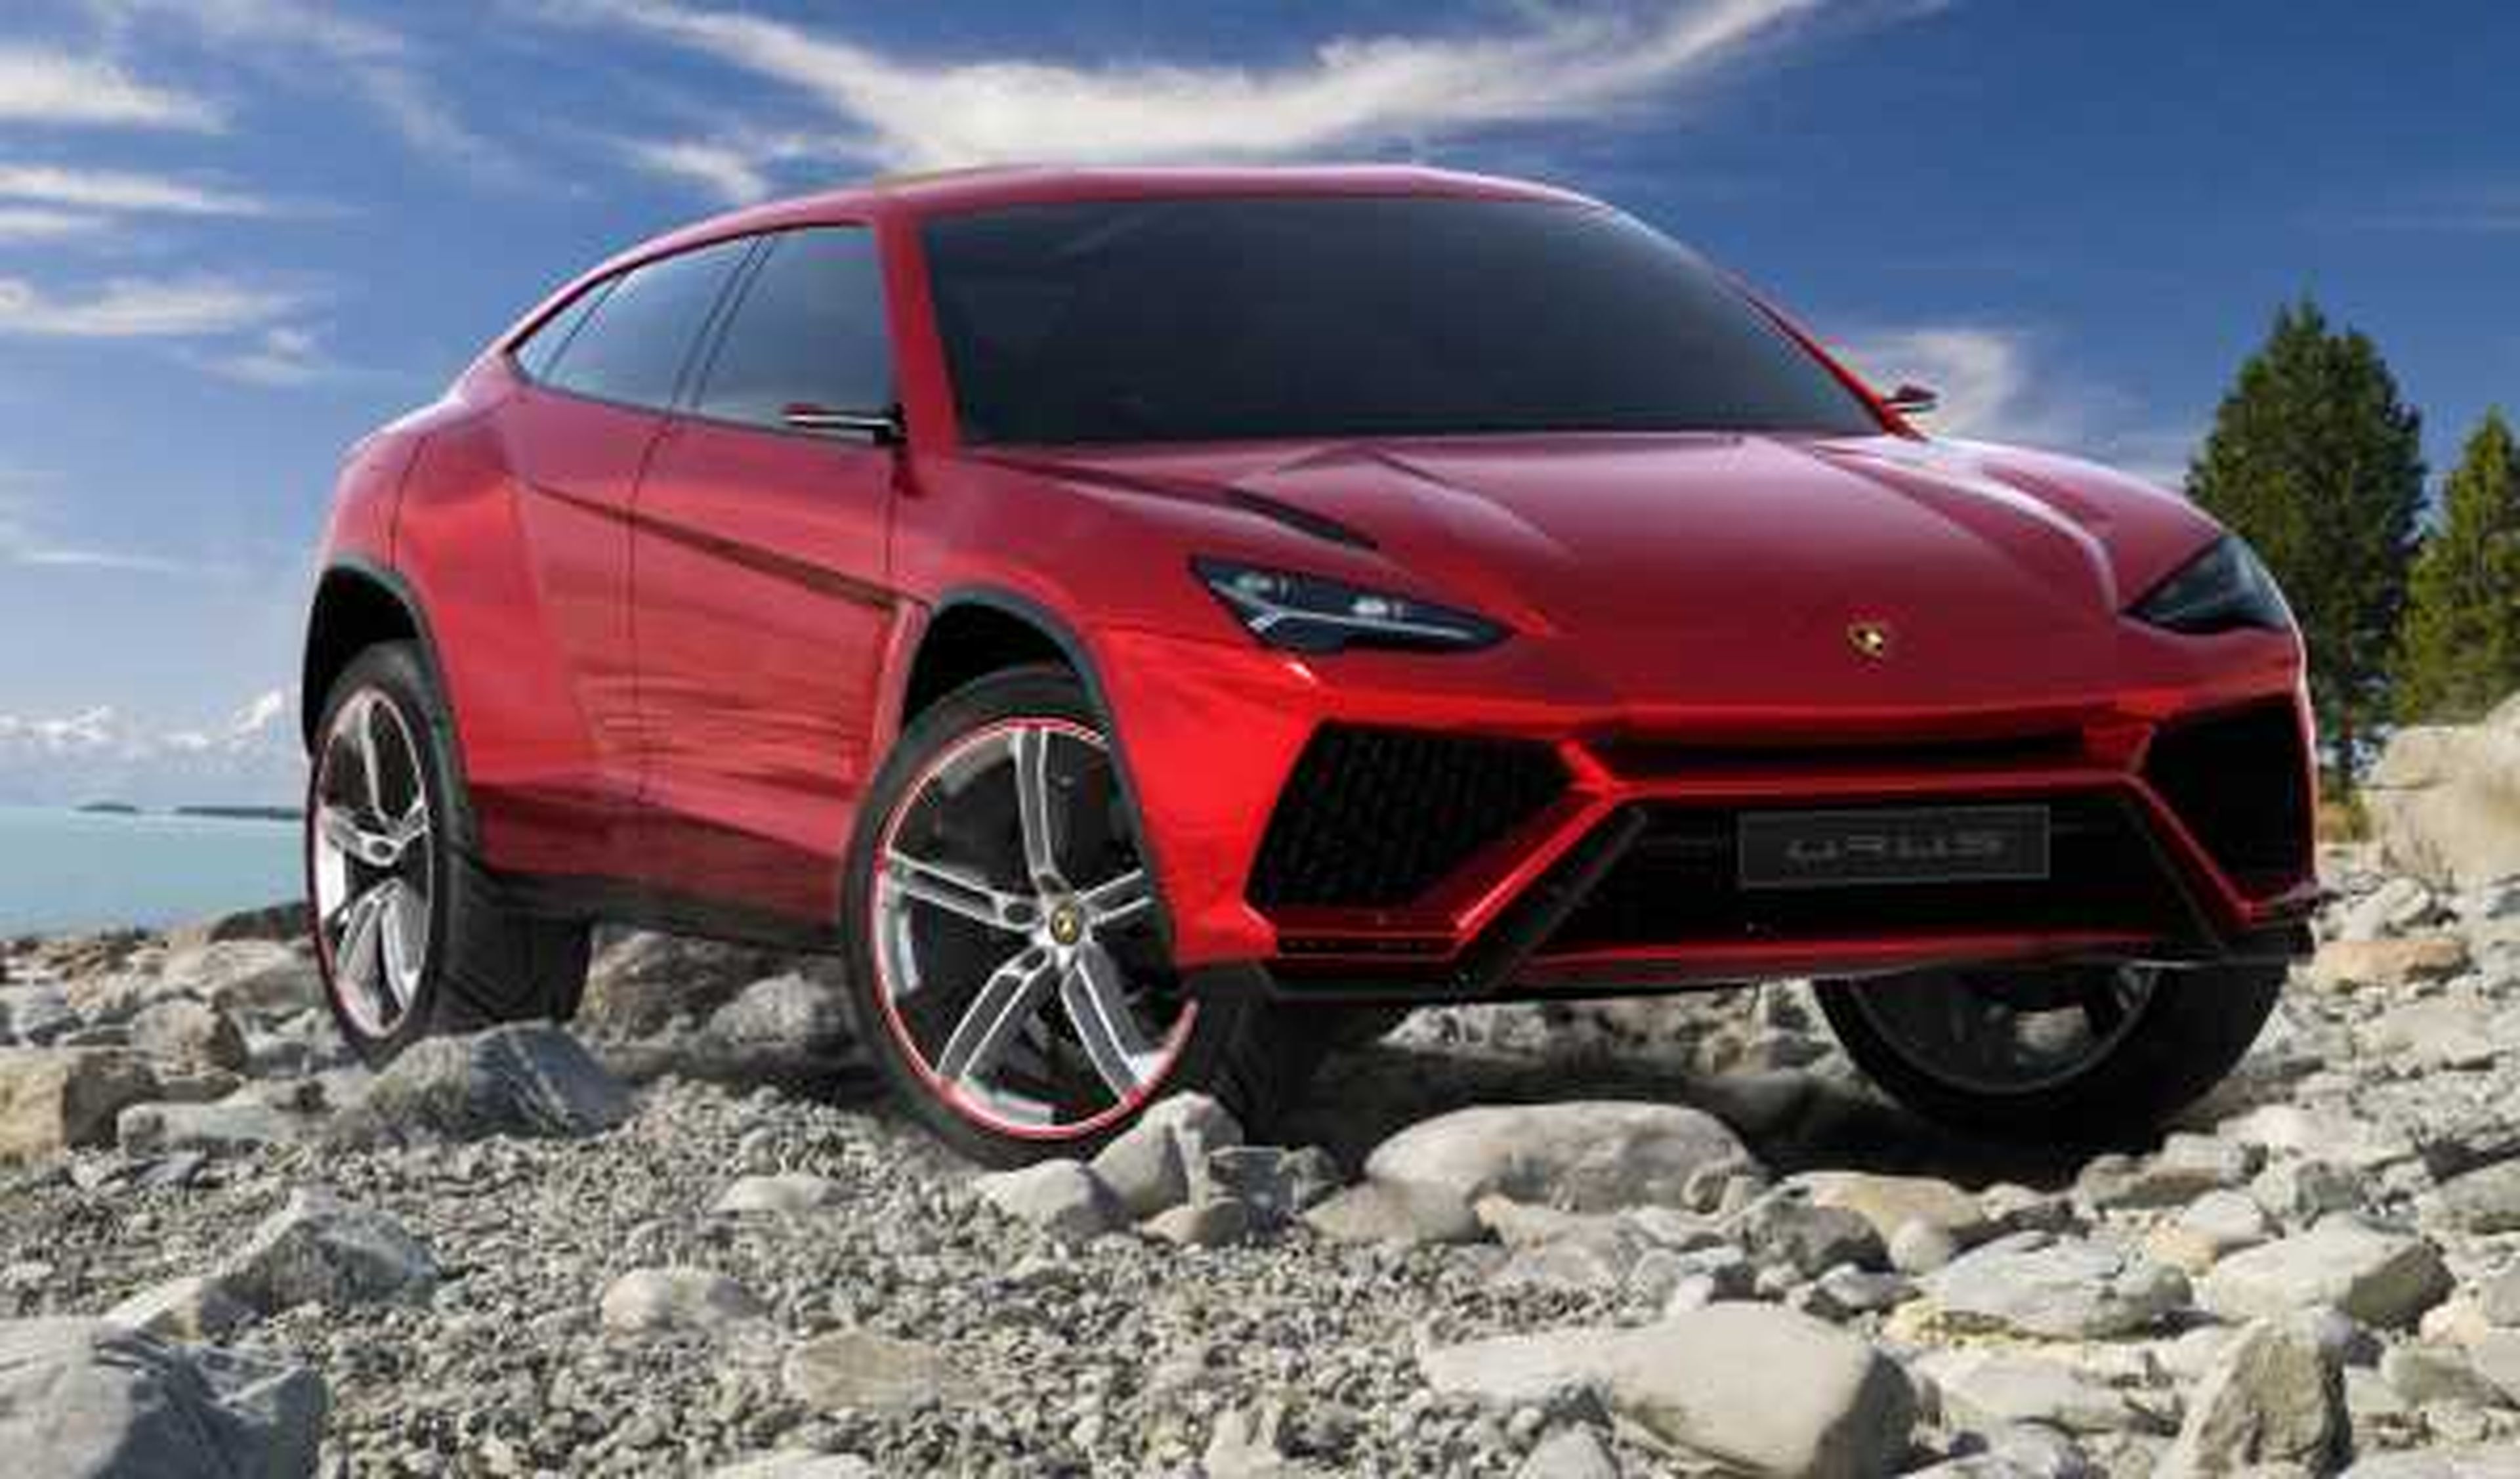 Lamborghini descarta un nuevo modelo de acceso a gama